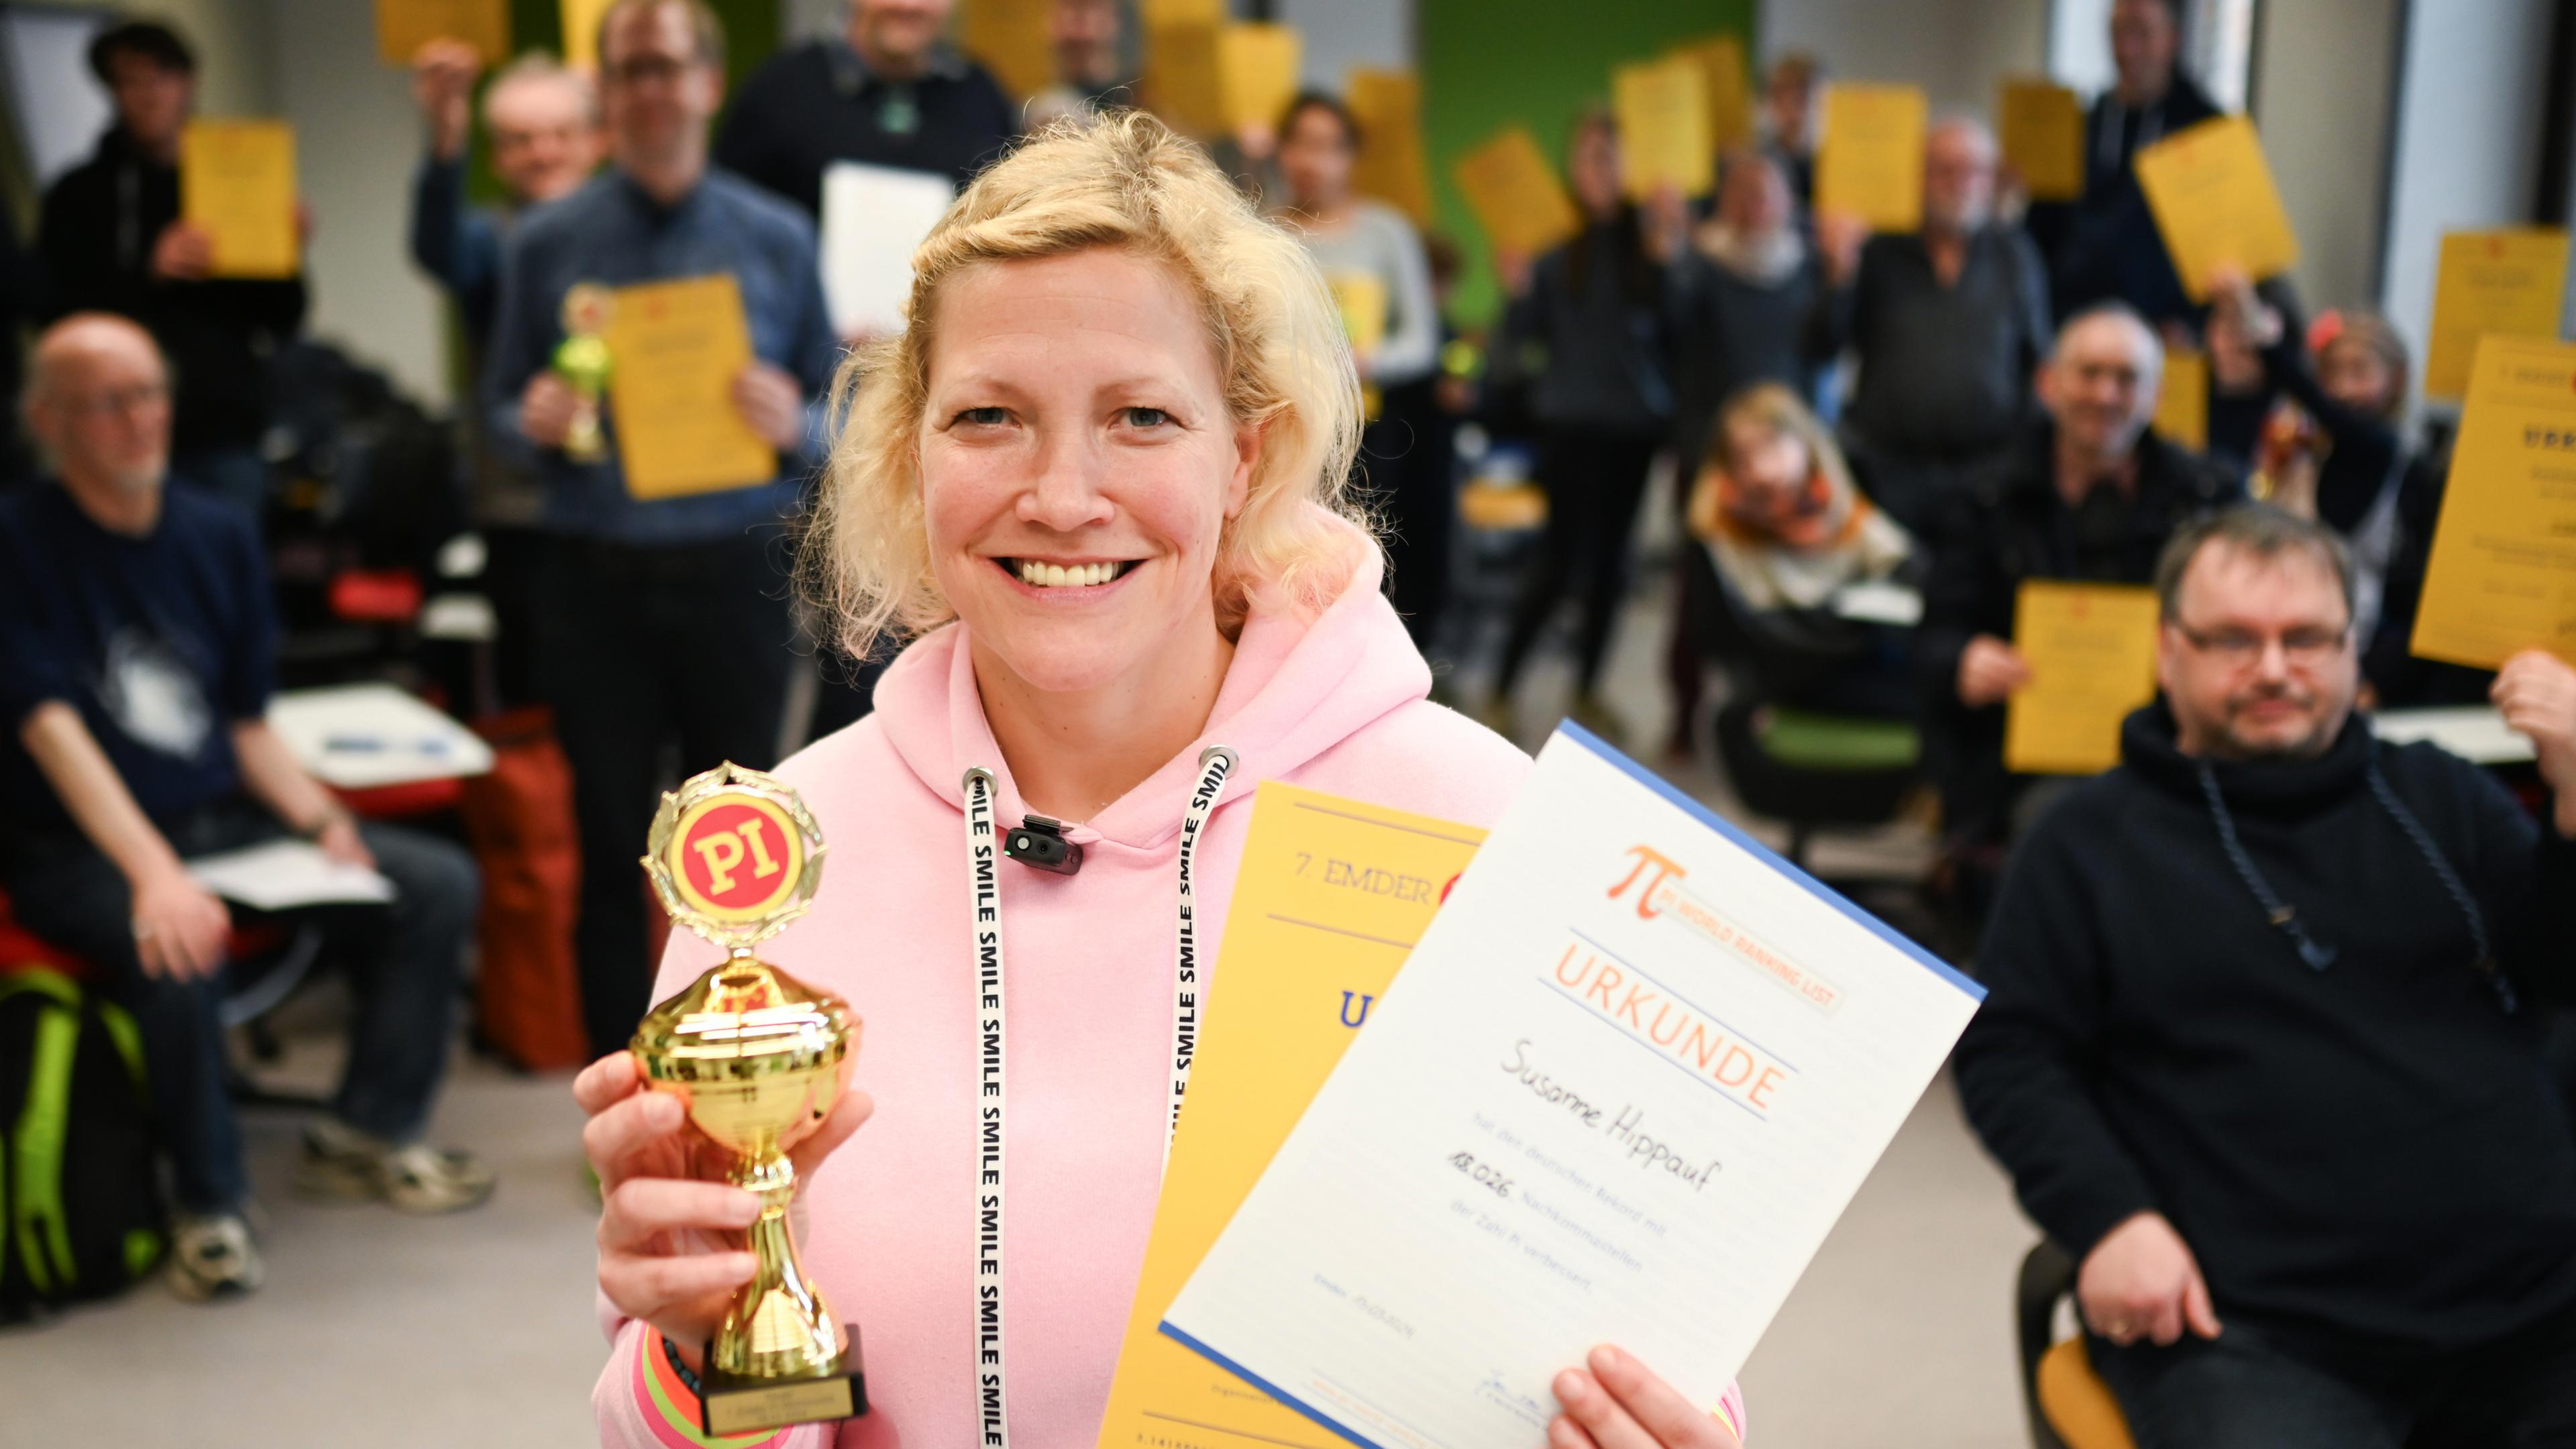 Susanne Hippauf aus Frankfurt am Main zeigt ihren Pokal und ihre Urkunde